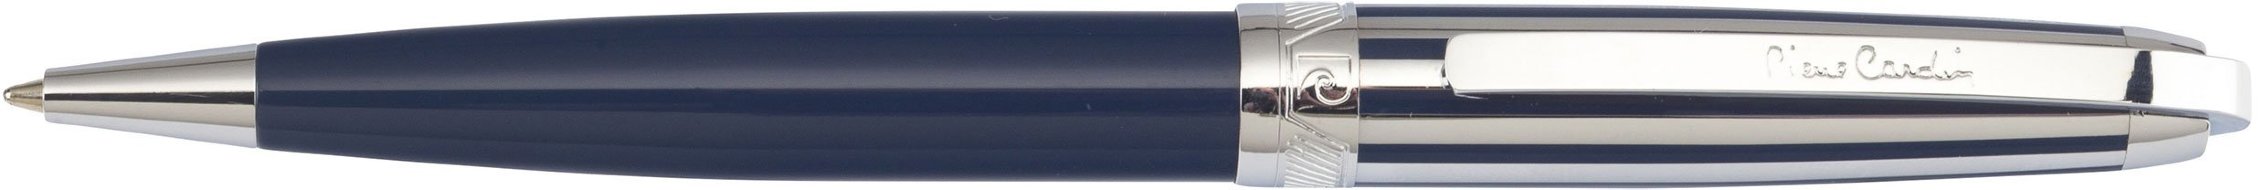 Шариковая ручка Pierre Cardin Progress синий лак, колпачок полосатый хром